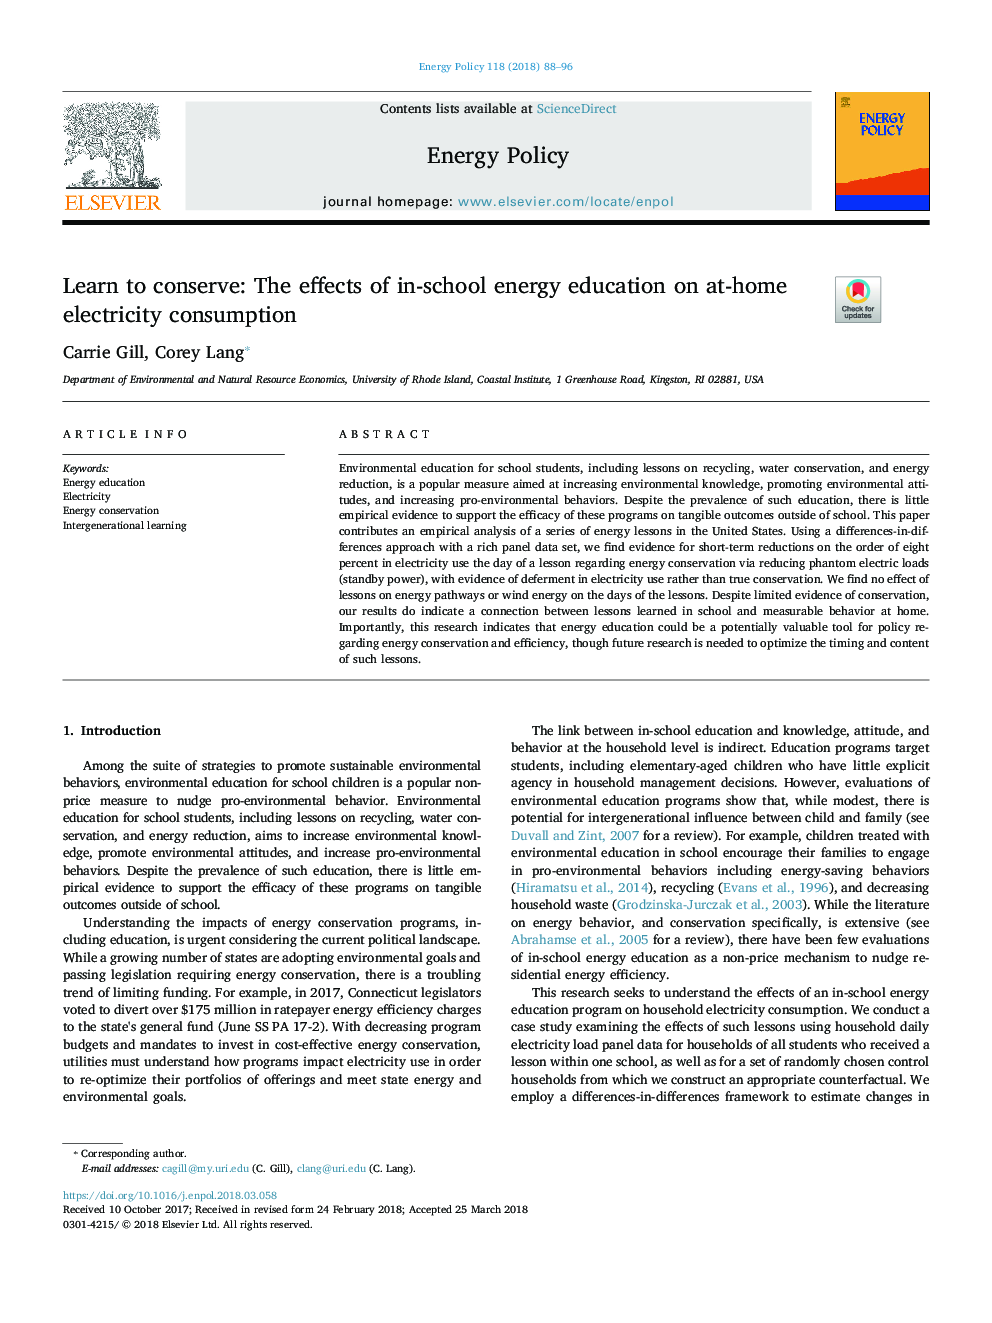 یادگیری برای حفظ: اثرات آموزش انرژی در مدرسه در مصرف برق خانگی 